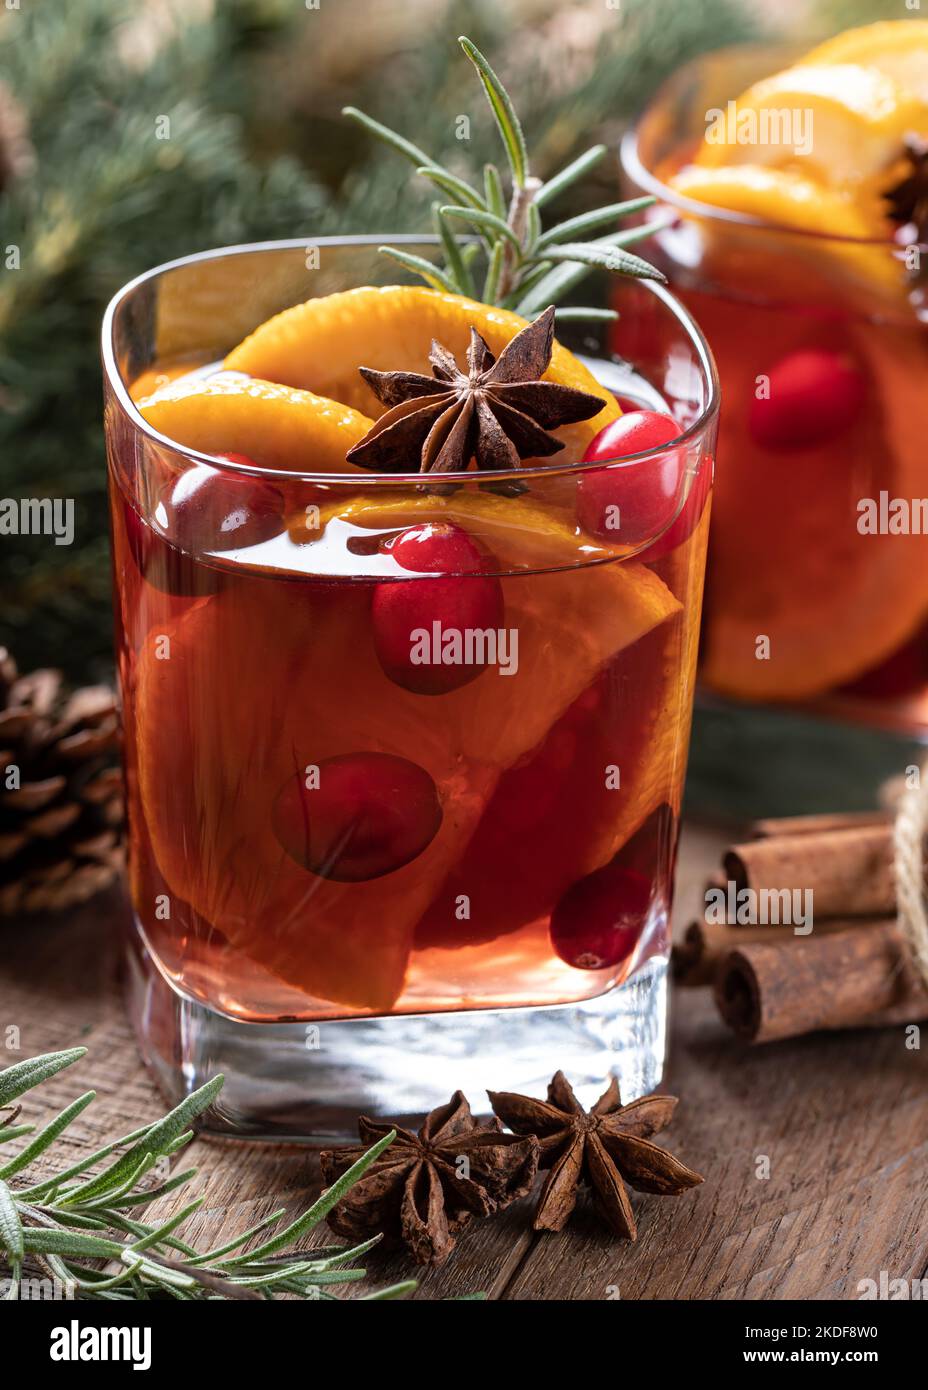 VIN brulé con fettine d'arancia, mirtilli rossi e spezie su un rustico tavolo di legno con decorazione dell'albero di Natale sullo sfondo Foto Stock